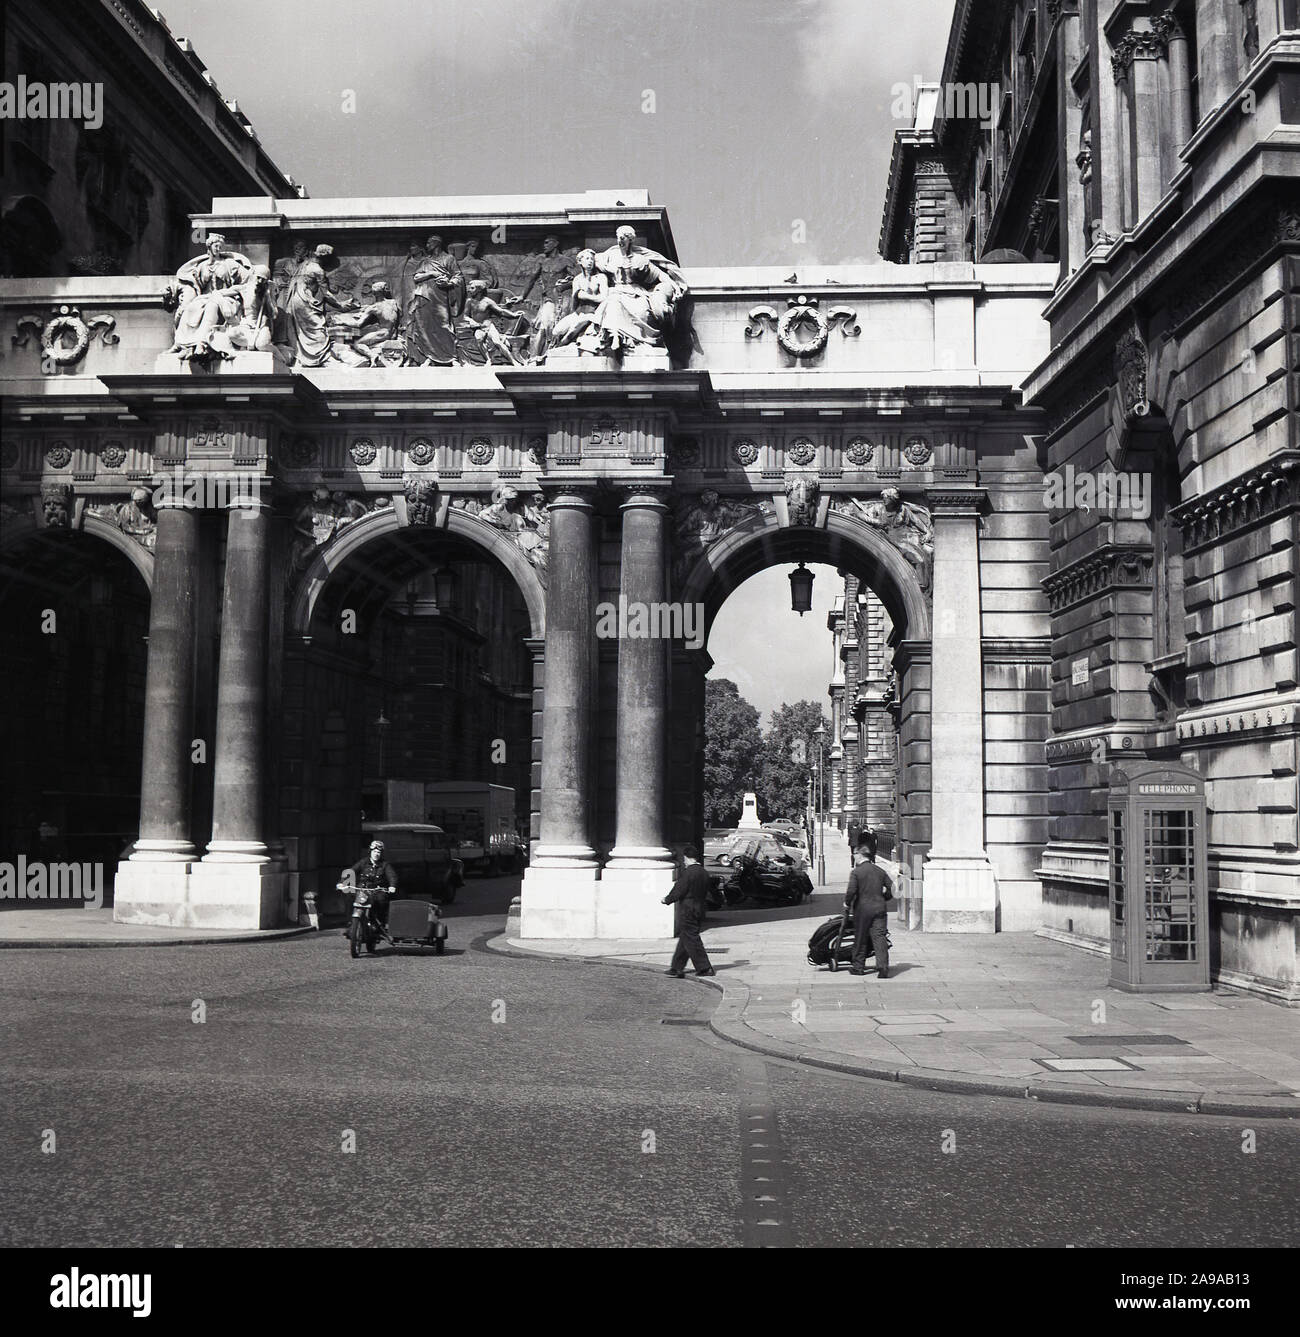 Années 1950, historique, un motocycliste avec side-car passe sous l'arche du milieu à la Triple Arch au King Charles Street, Whitehall, Londres, Angleterre, Royaume-Uni. Le pont qui traverse elle relie les édifices gouvernementaux. Banque D'Images